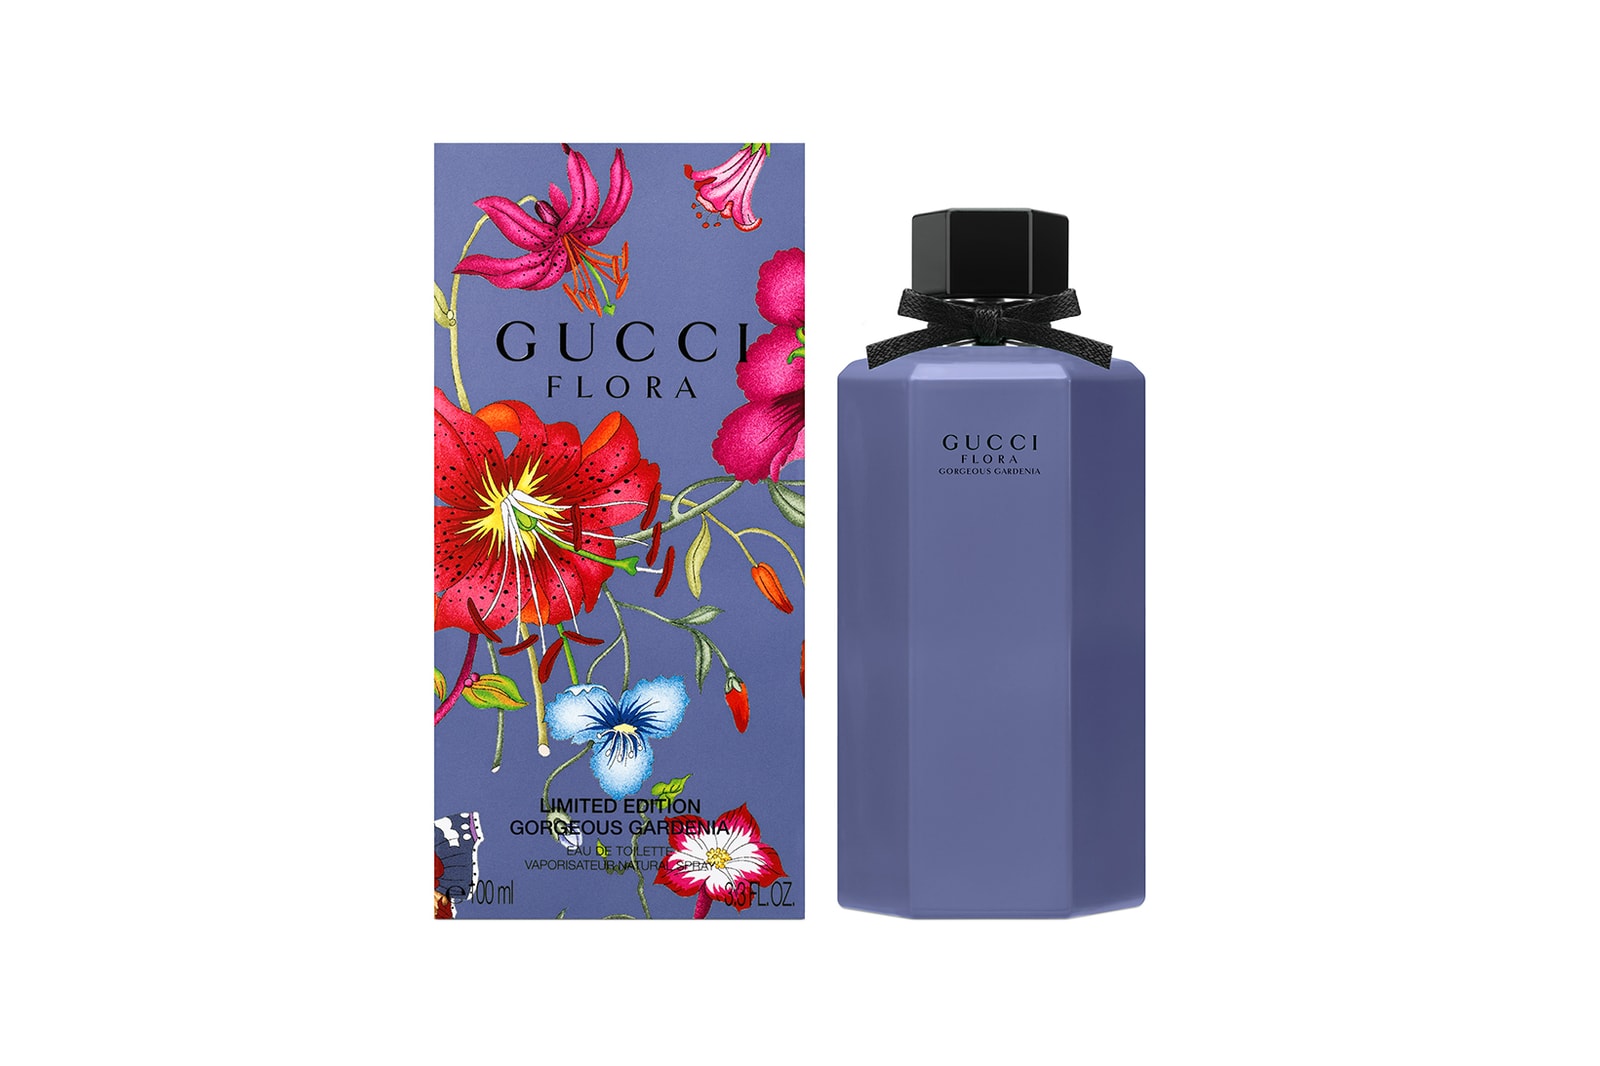 Gucci Flora Gorgeous Gardenia Perfume Review | Hypebae